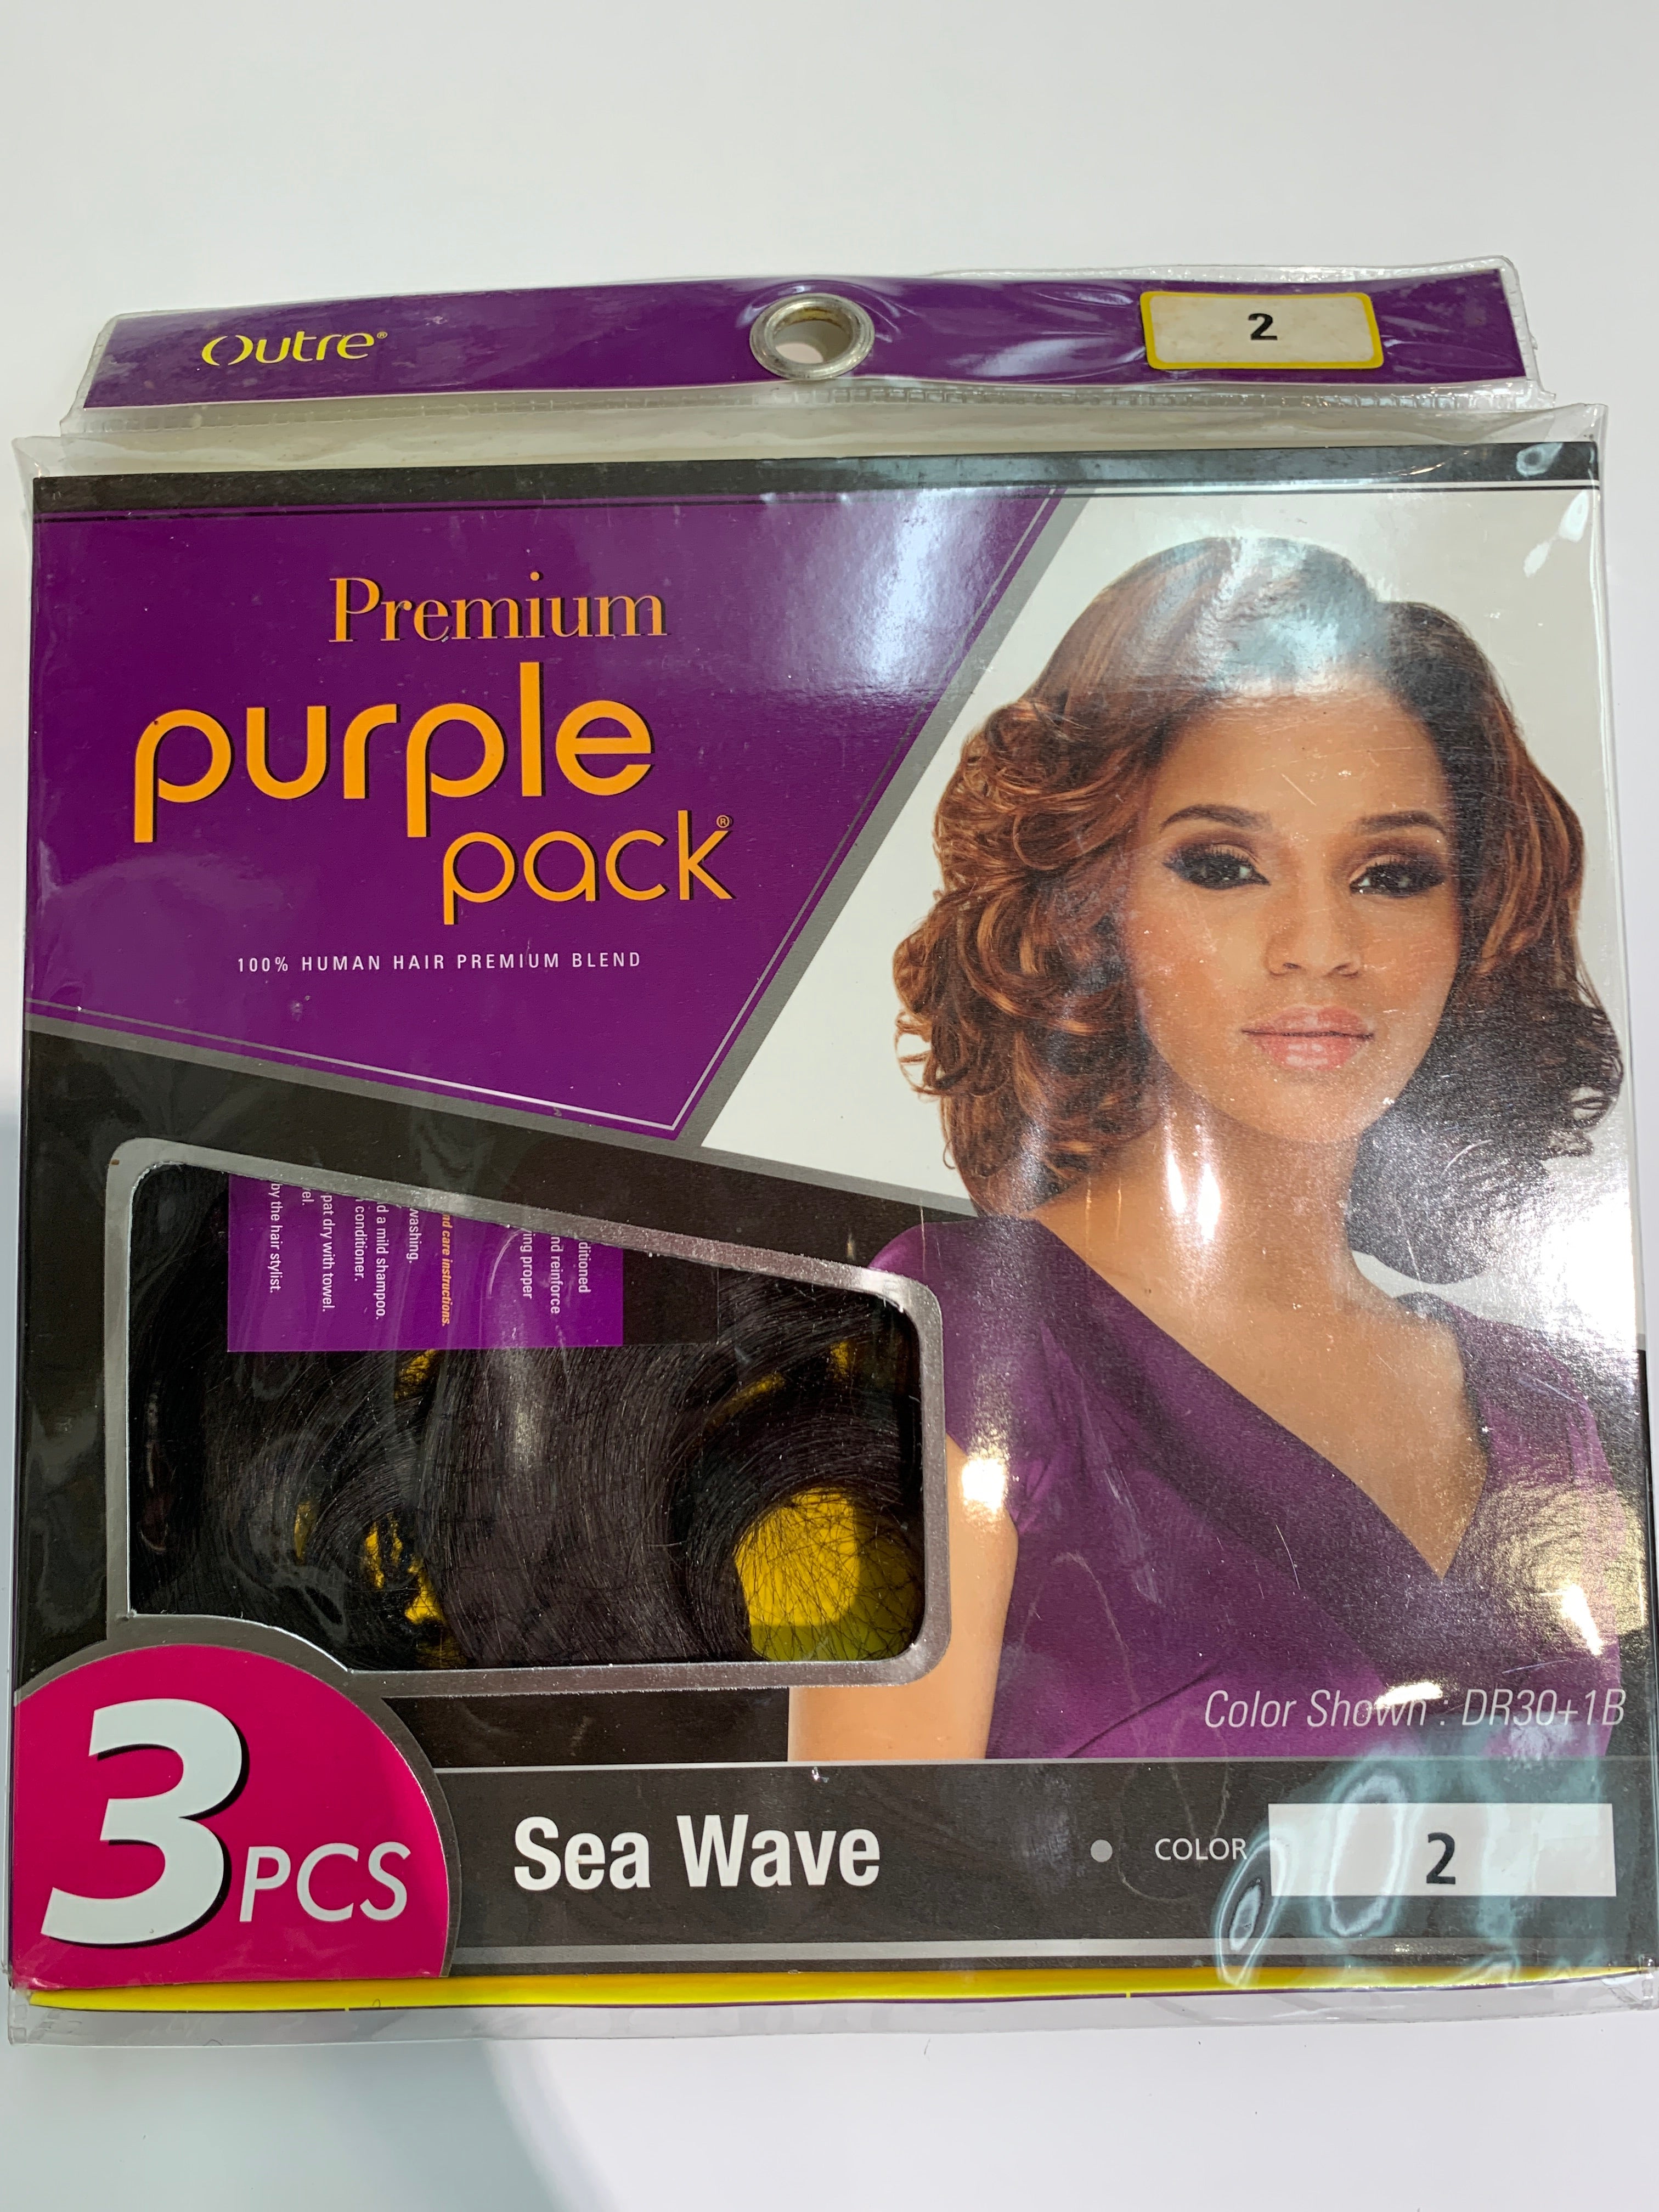 Outre premium purple pack 3pcs Sea wave